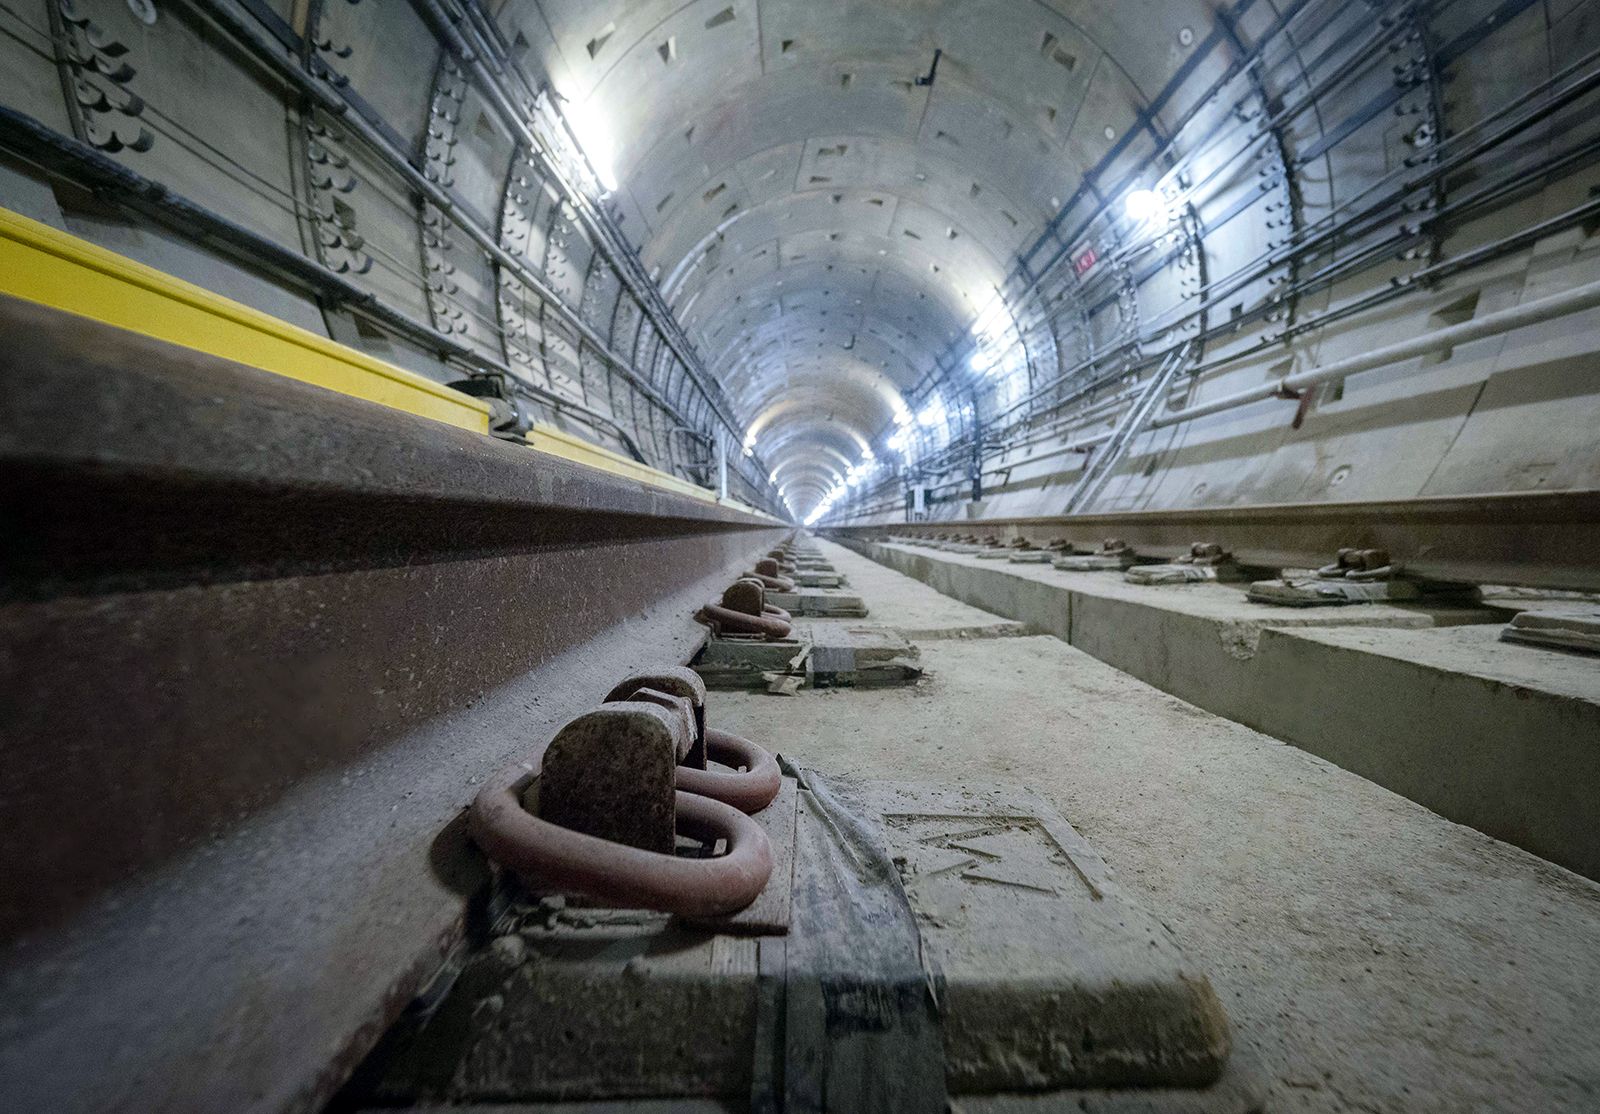 Сергей Собянин дал поручение разработать проект планировки станции метро «Новомосковская»